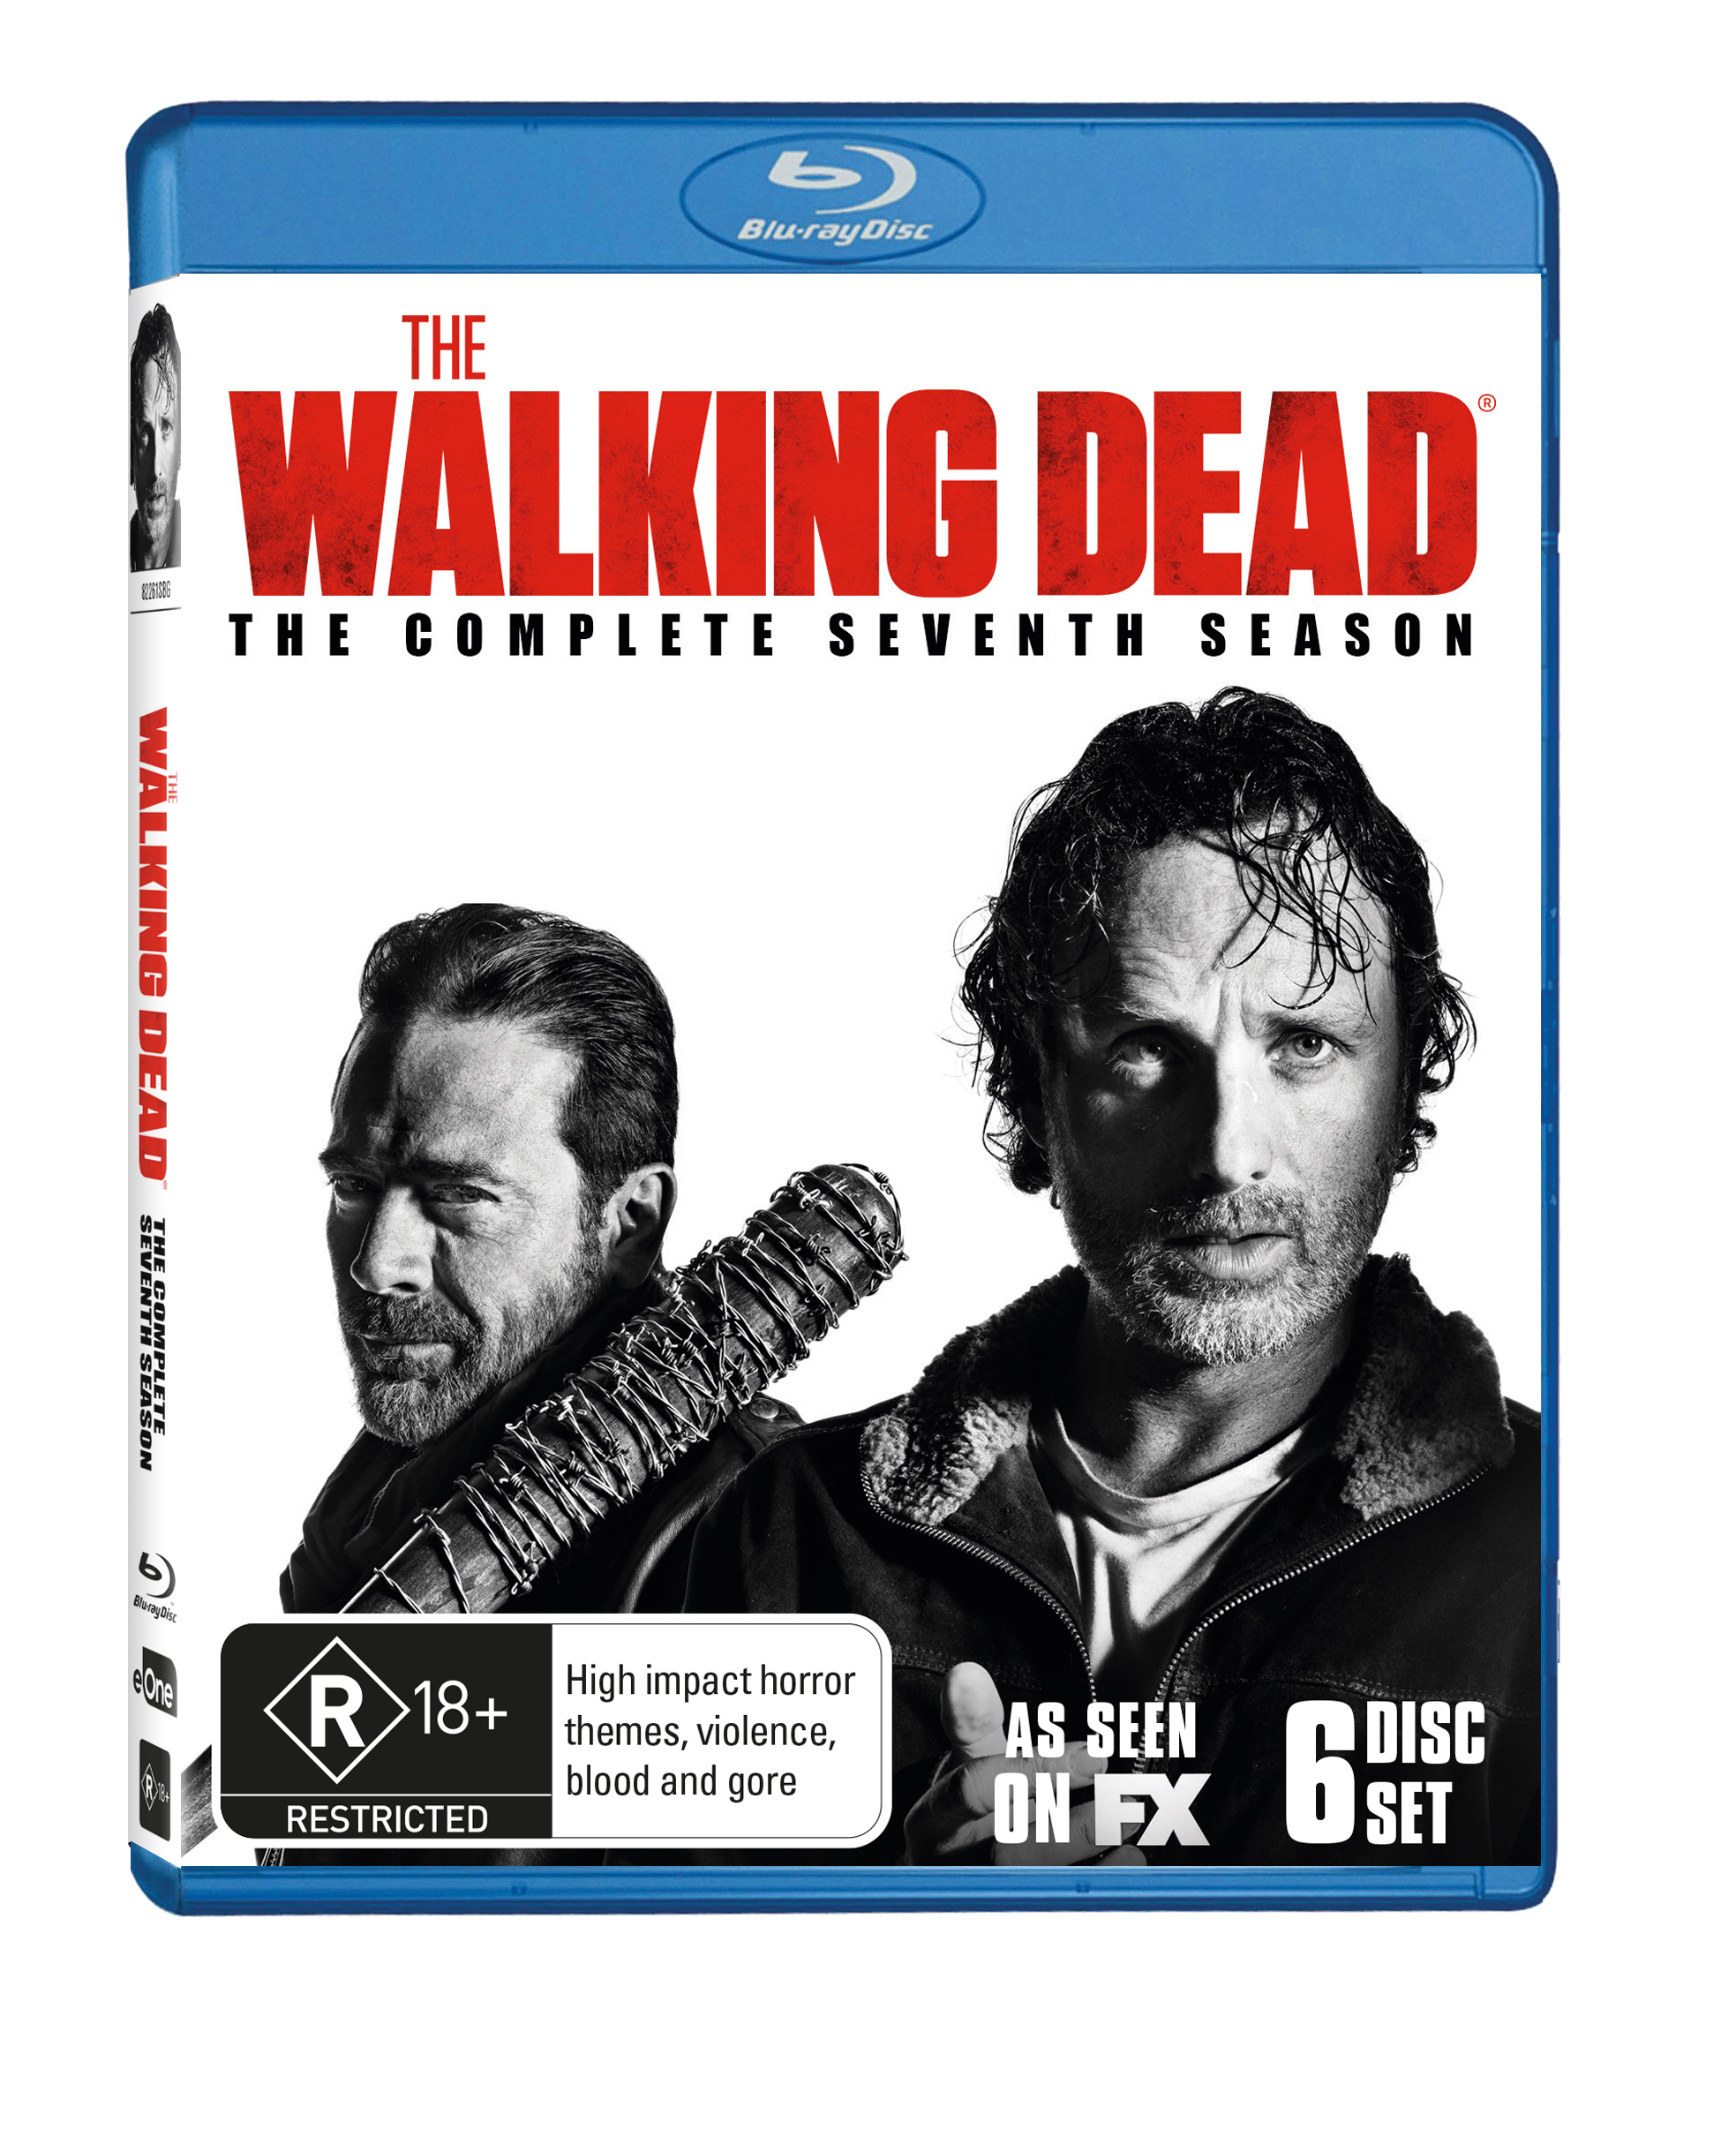 Win The Walking Dead Season 7 on Blu Ray!